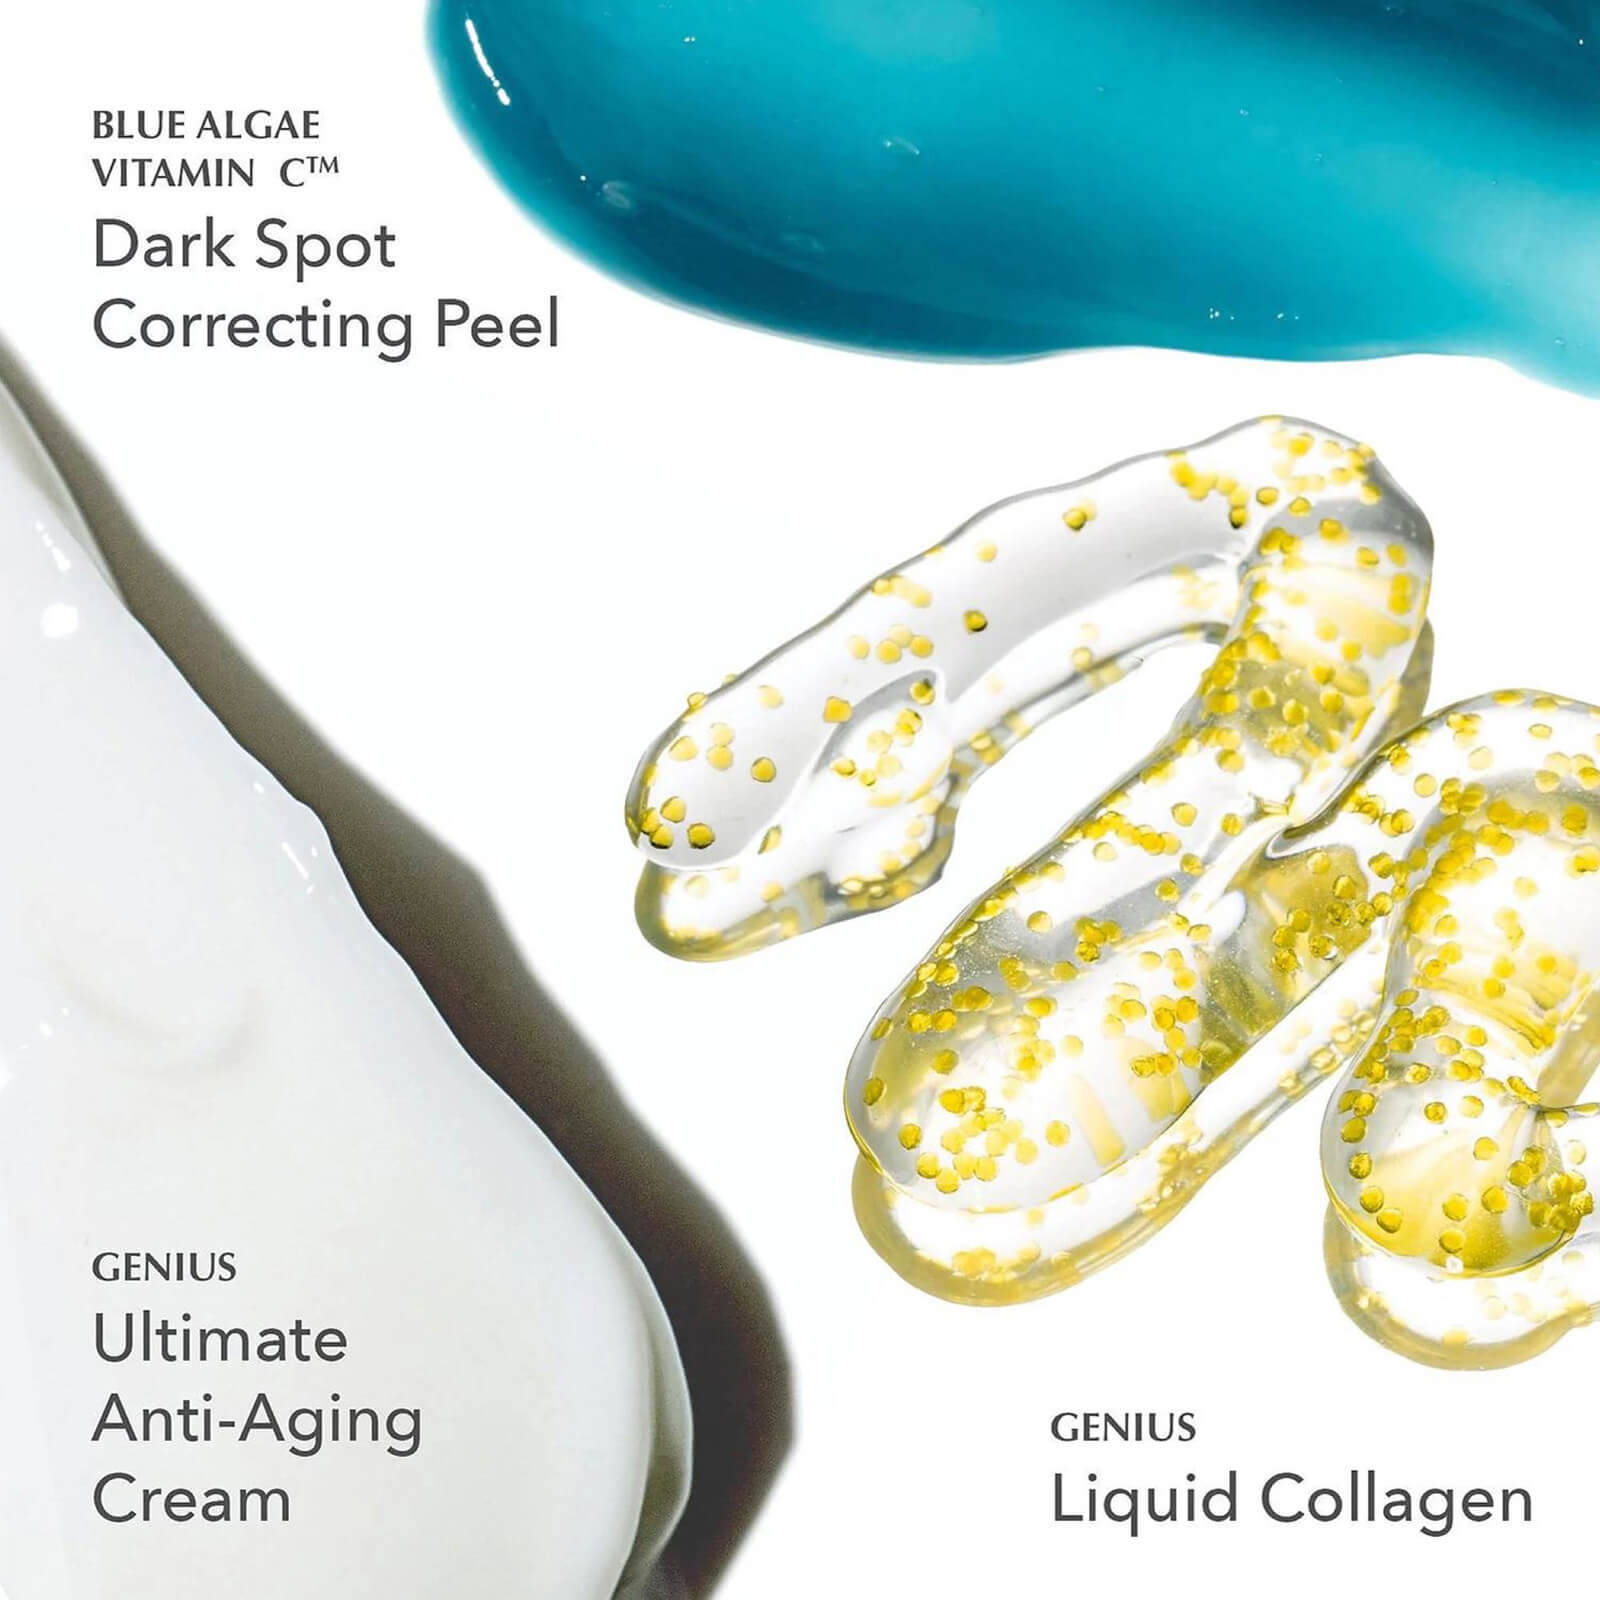 Dark spot correcting peel, Ultimate anti aging cream, Liquid Collagen